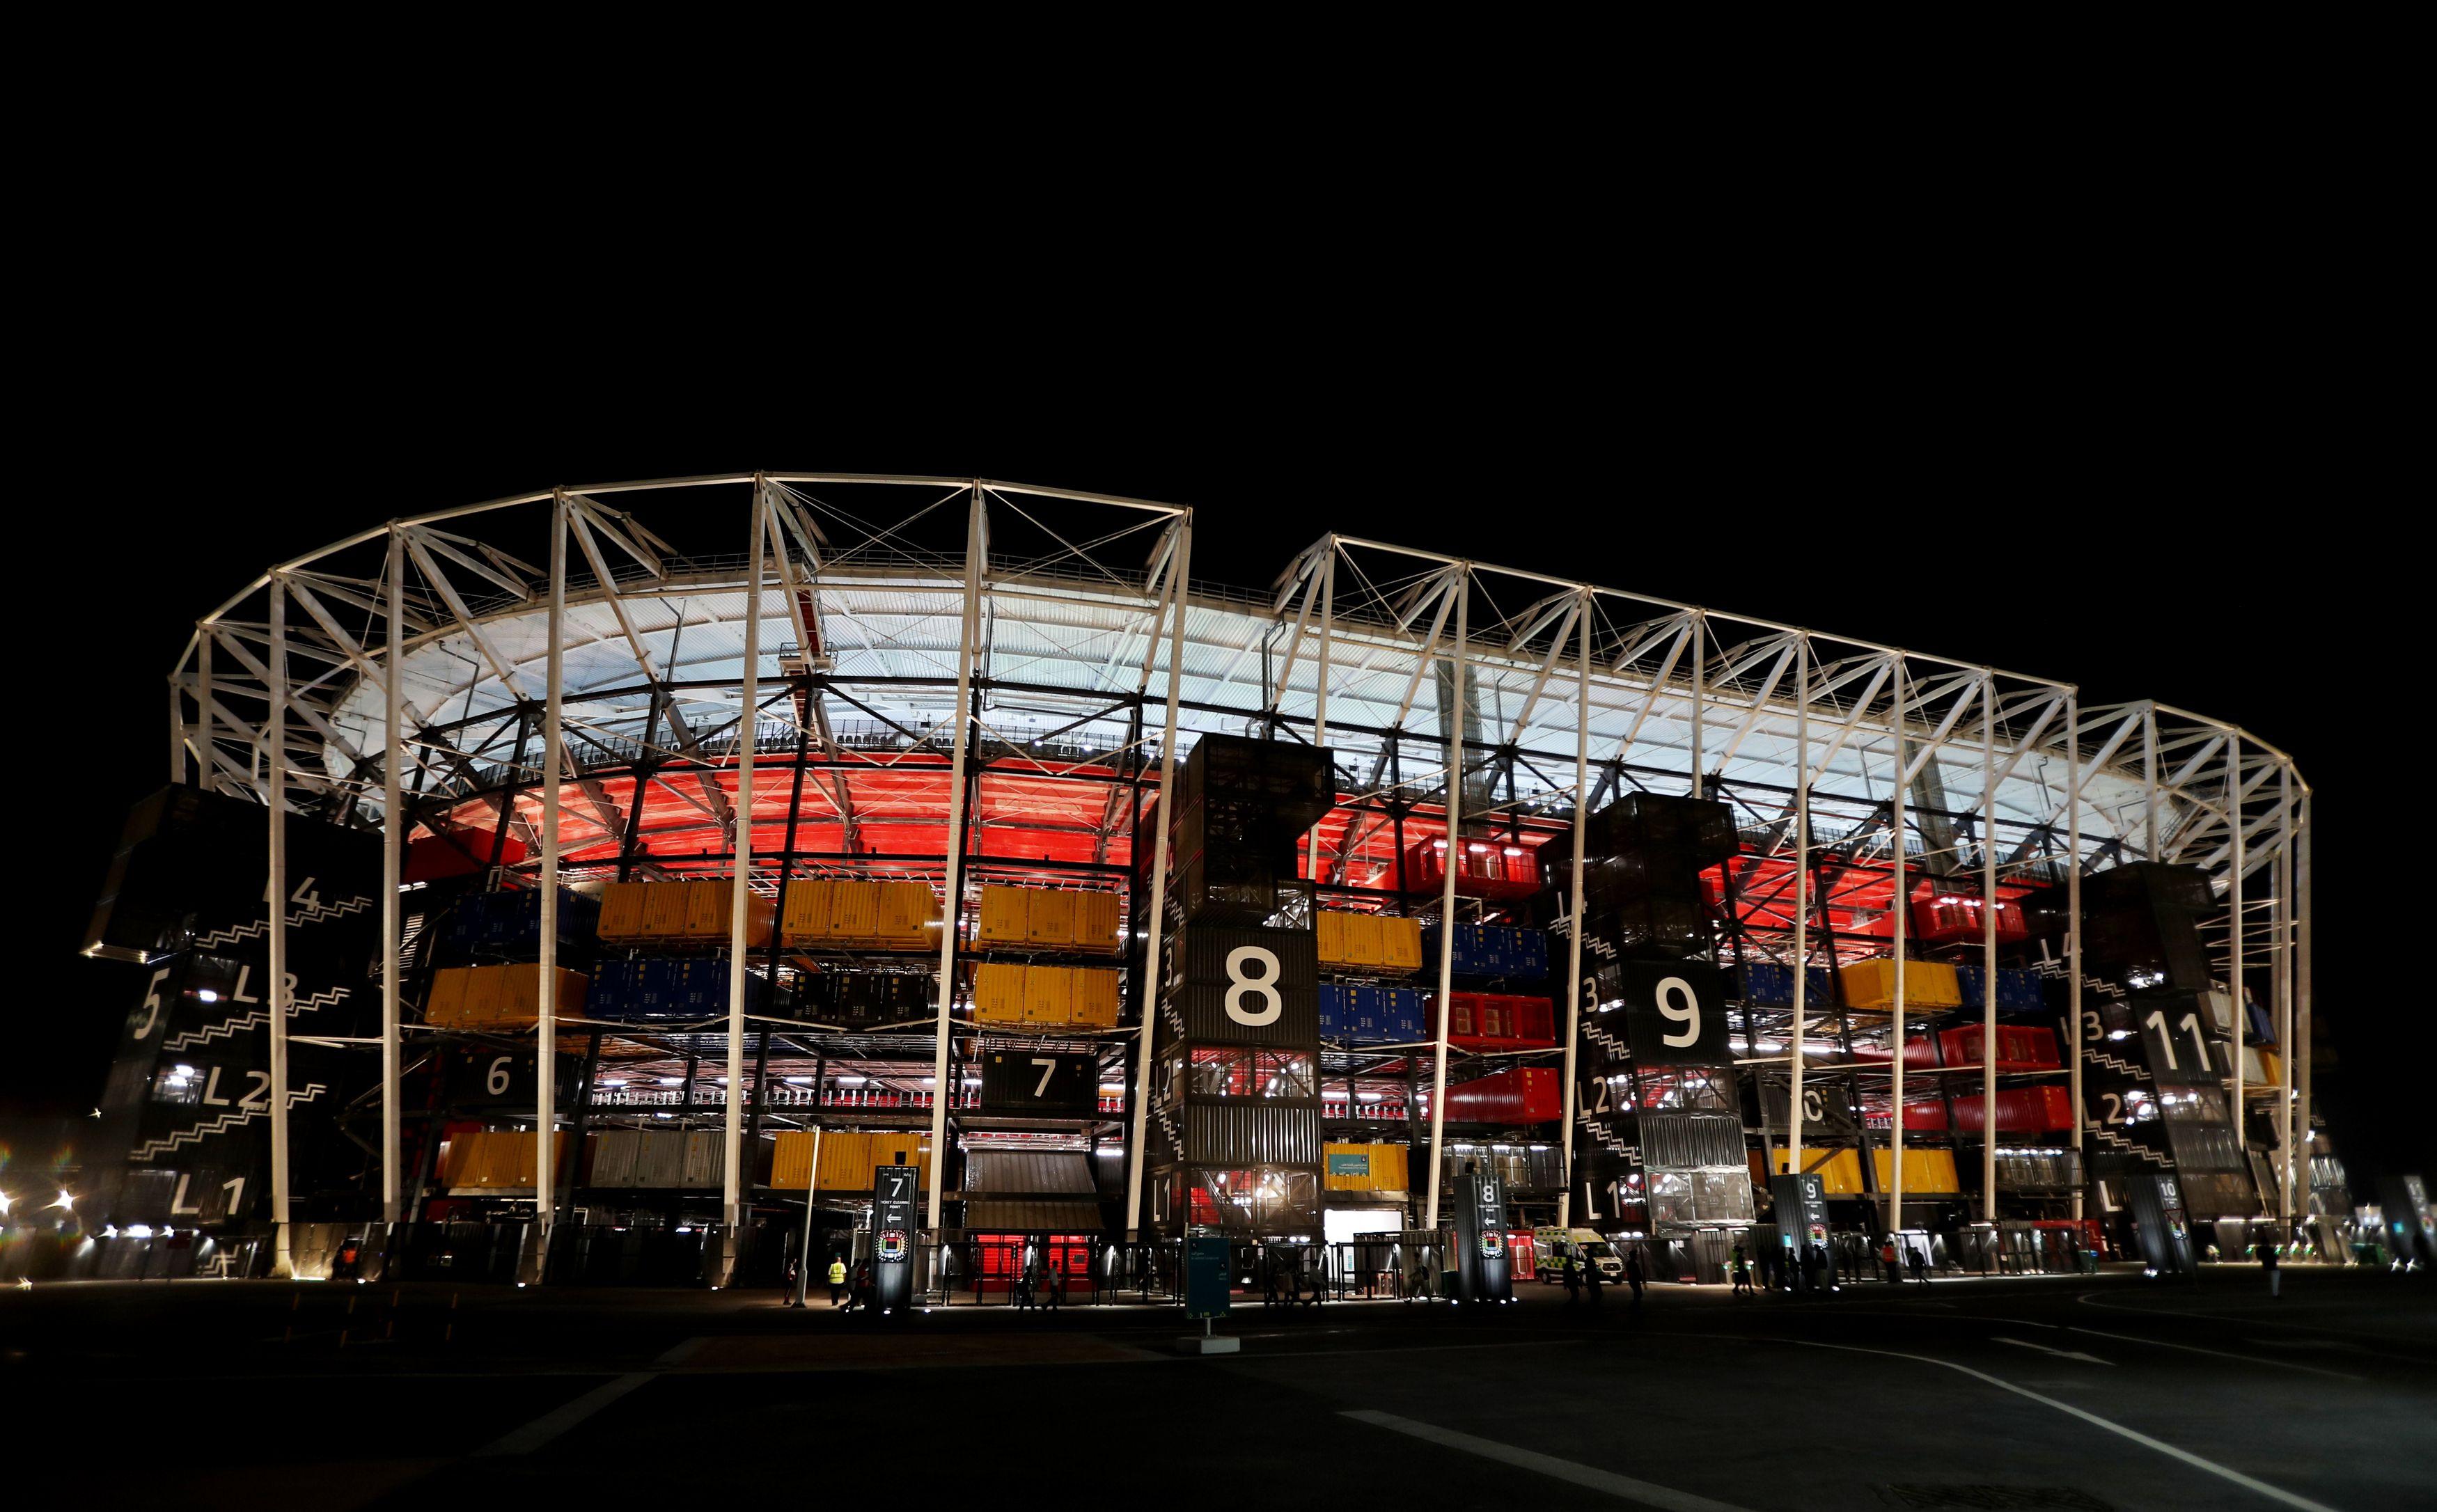 Copa do mundo do Catar: conheça os 8 estádios que receberão os jogos